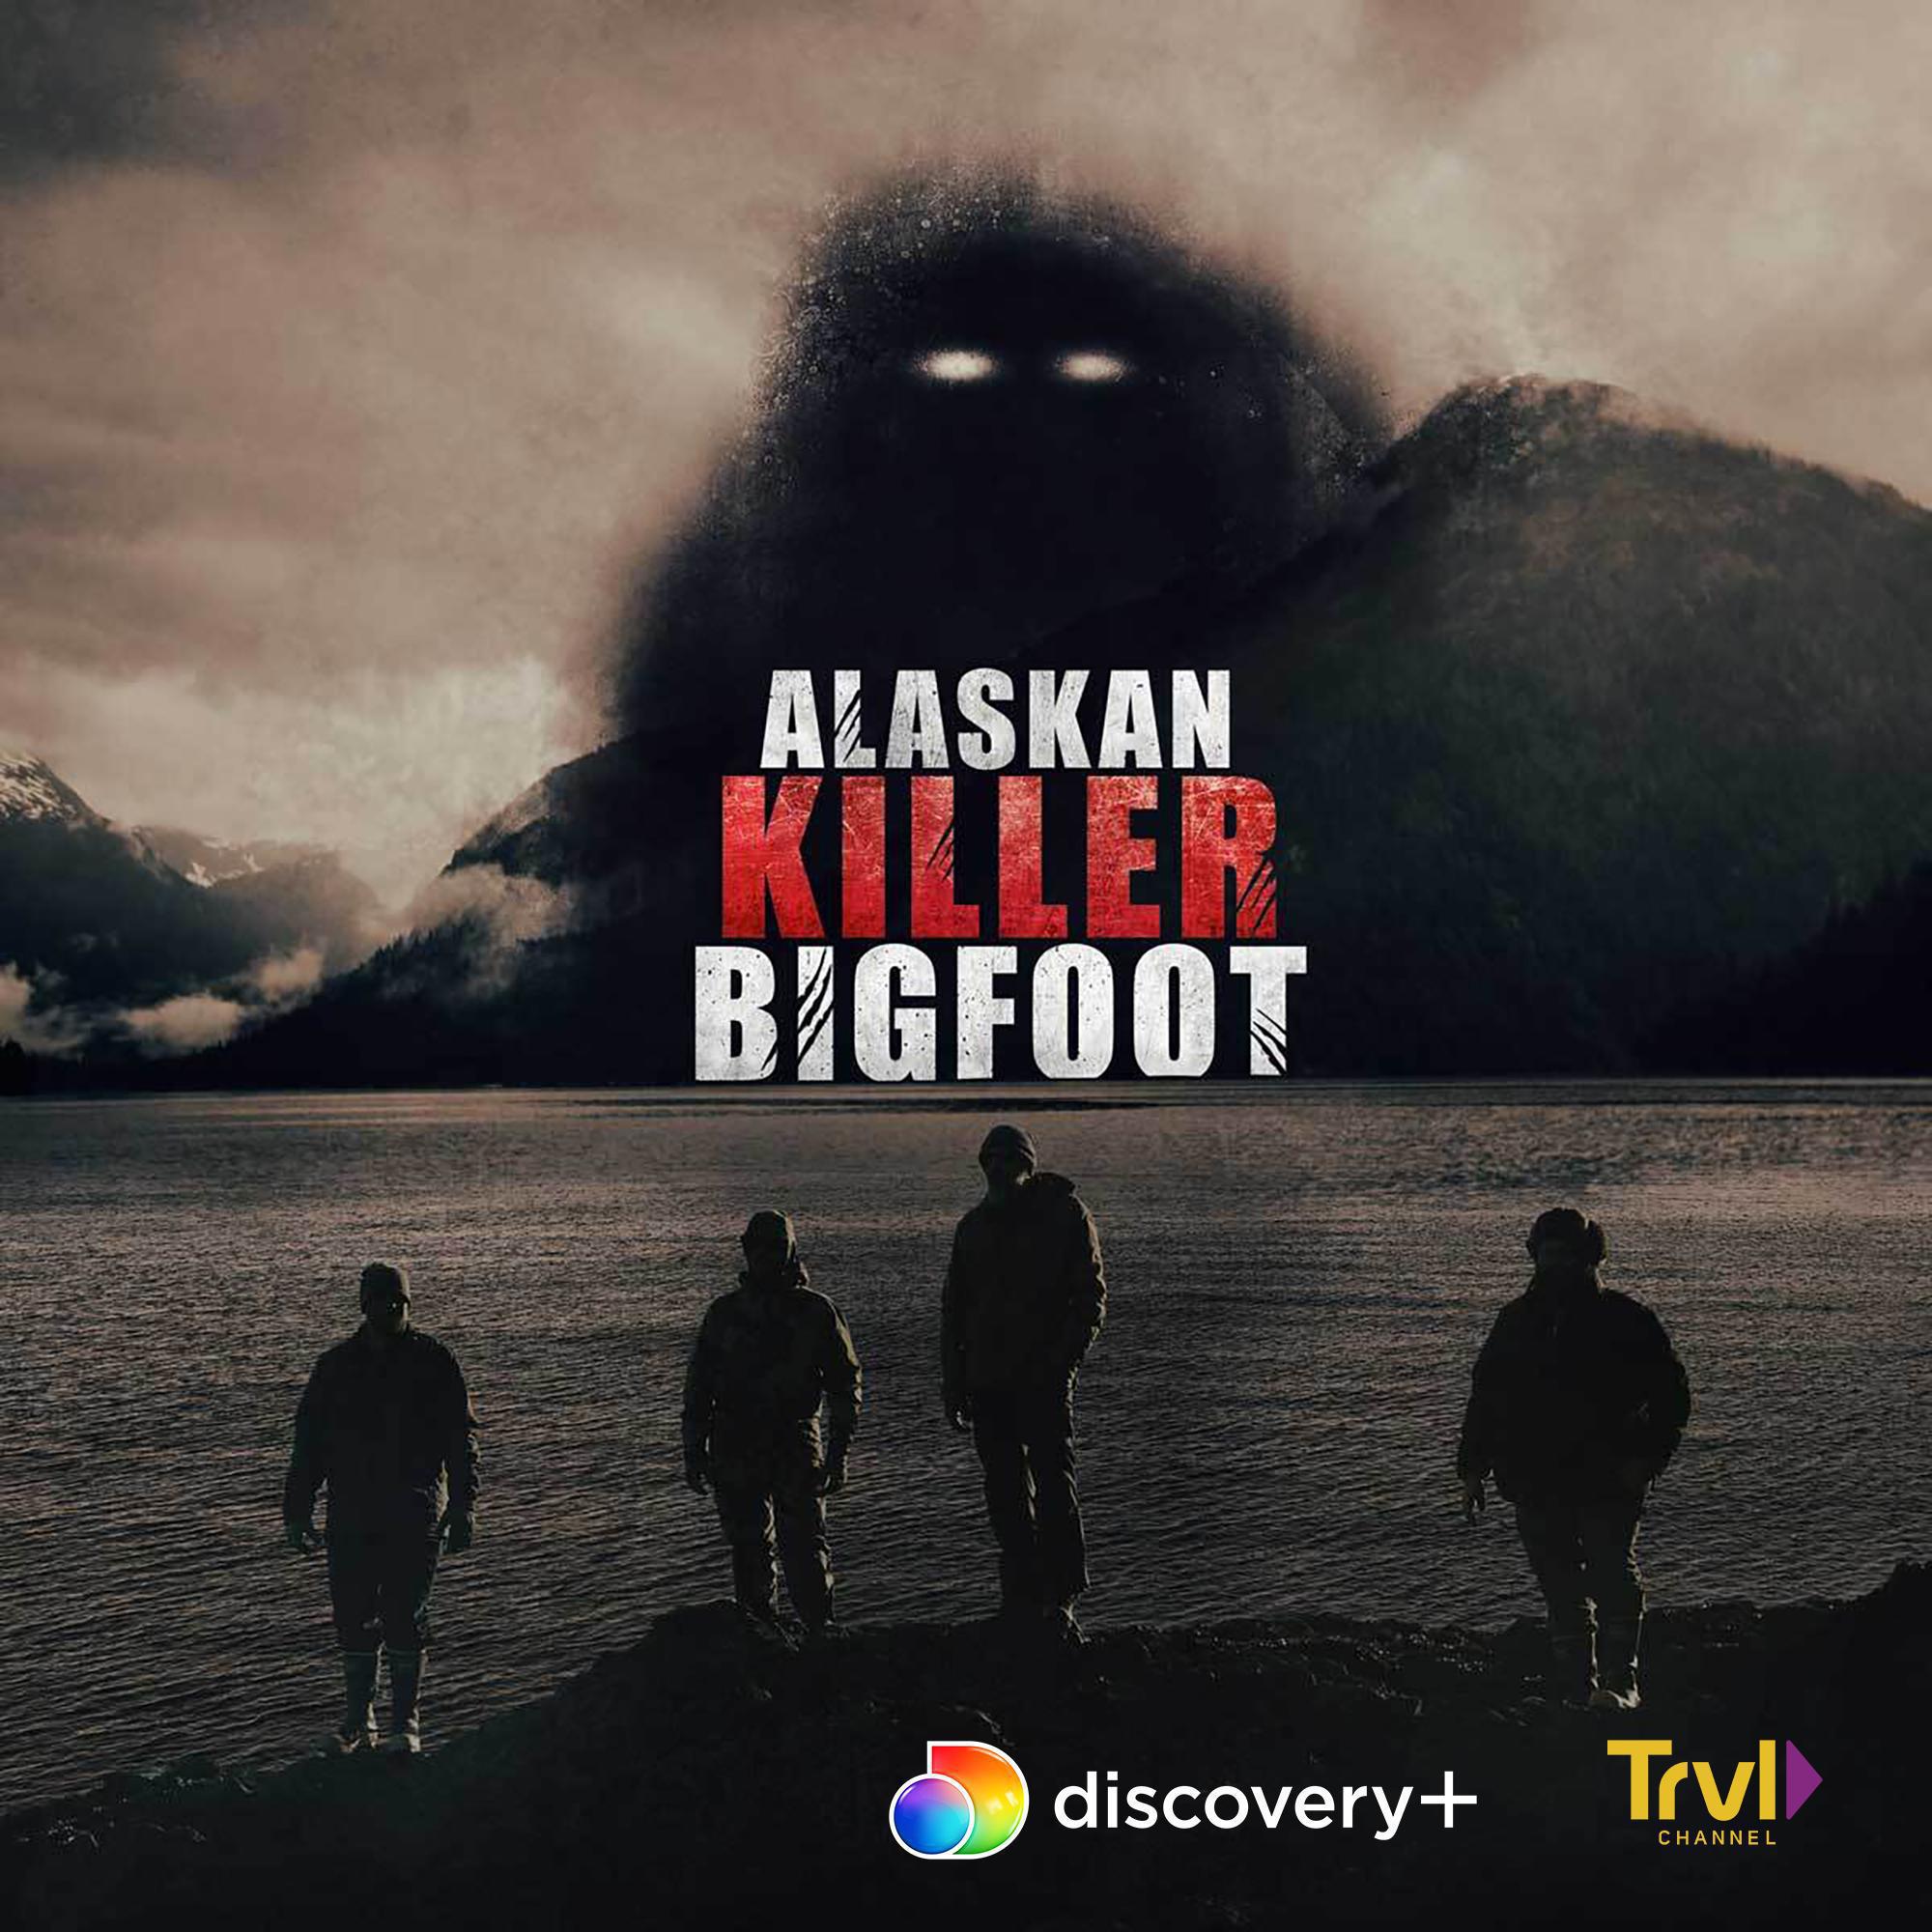 TV ratings for Alaskan Killer Bigfoot in Australia. Discovery+ TV series